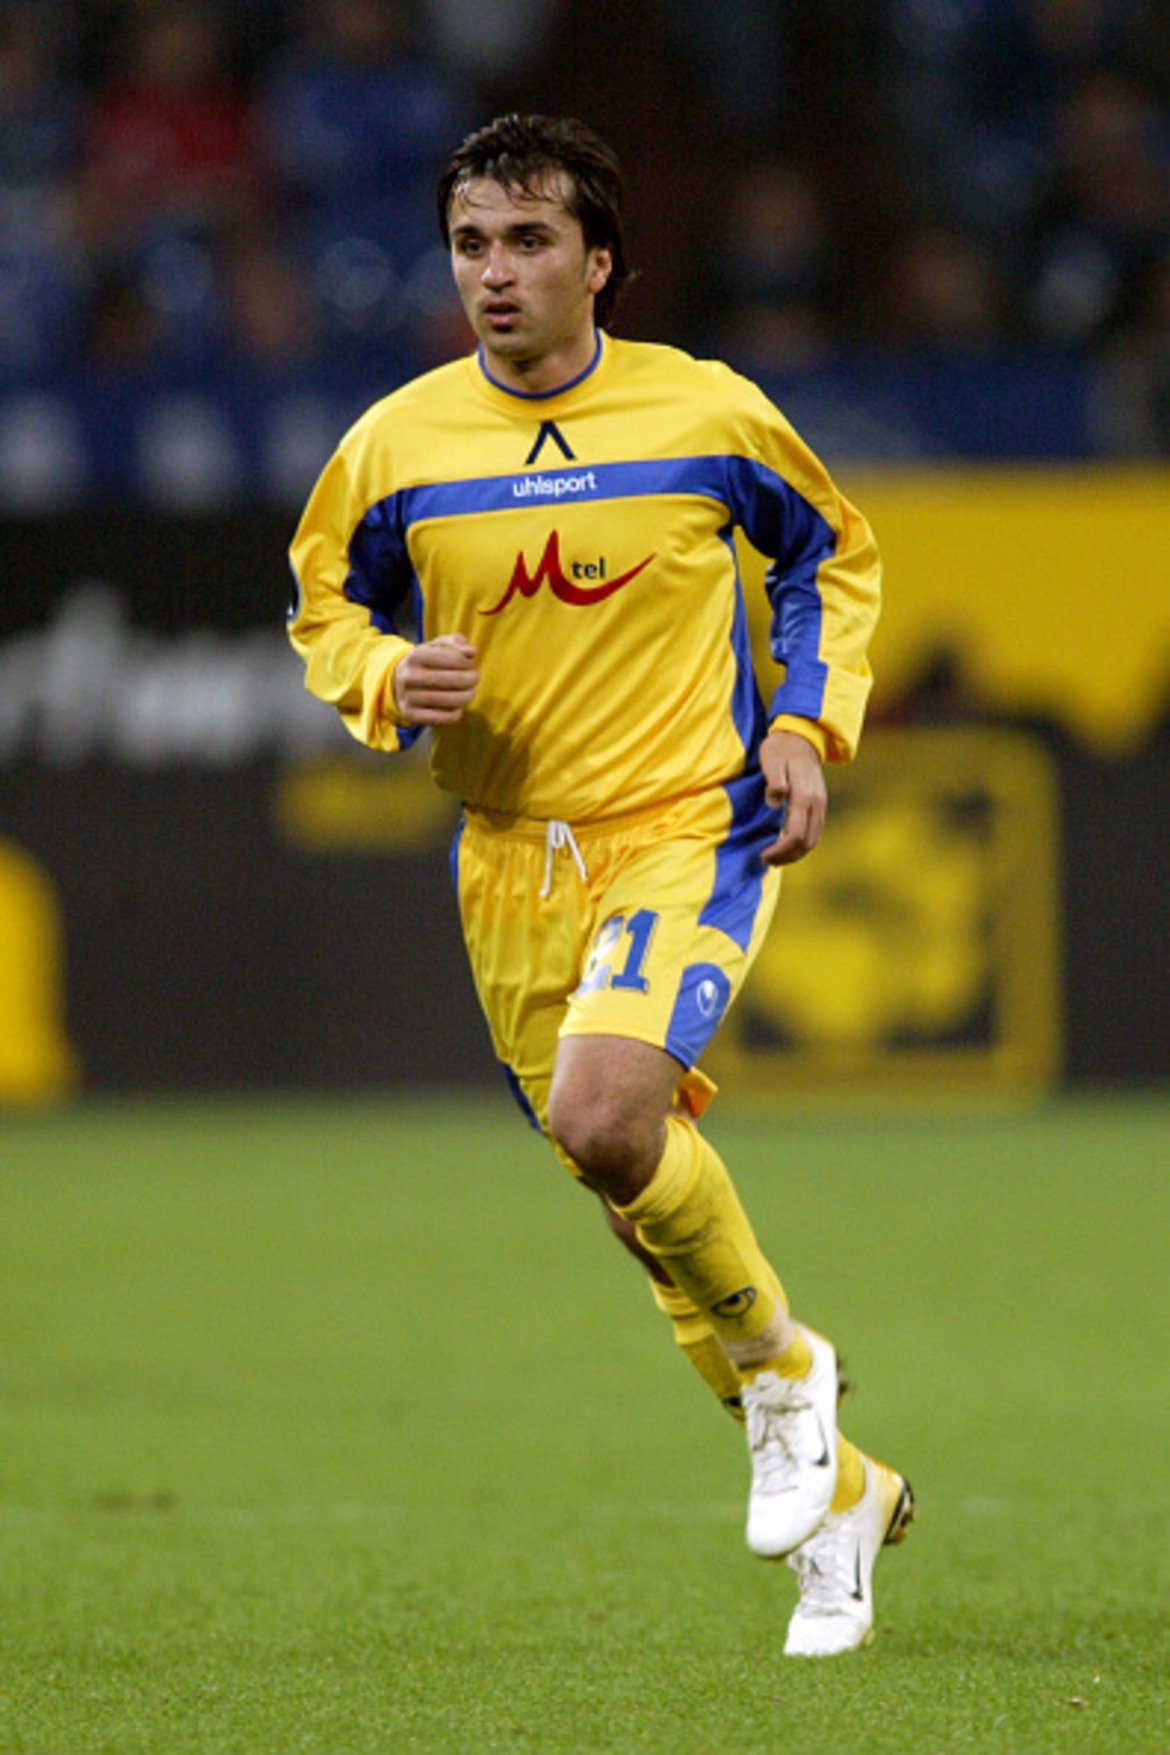 Дясно крило: Димитър Телкийски
Мечо Телкийски бе сред звездите на онзи паметен отбор, а в реванша с Киево откри резултата в 34-ата минута. Любимецът на синята публика напусна отбора през 2008-а и игра в Апоел Тел Авив, а после и в Амкар Перм, преди да се завърне в Левски през зимата на 2009-а. После пак не му се получи в Израел и се върна в България с екипите на Локо София и Черноморец Бургас. Неотдавна водеше юношите старша възраст на „Герена“, но неразбориите в ръководството на клуба го накараха да напусне. Този сезон води тима на Оборище Панагюрище.